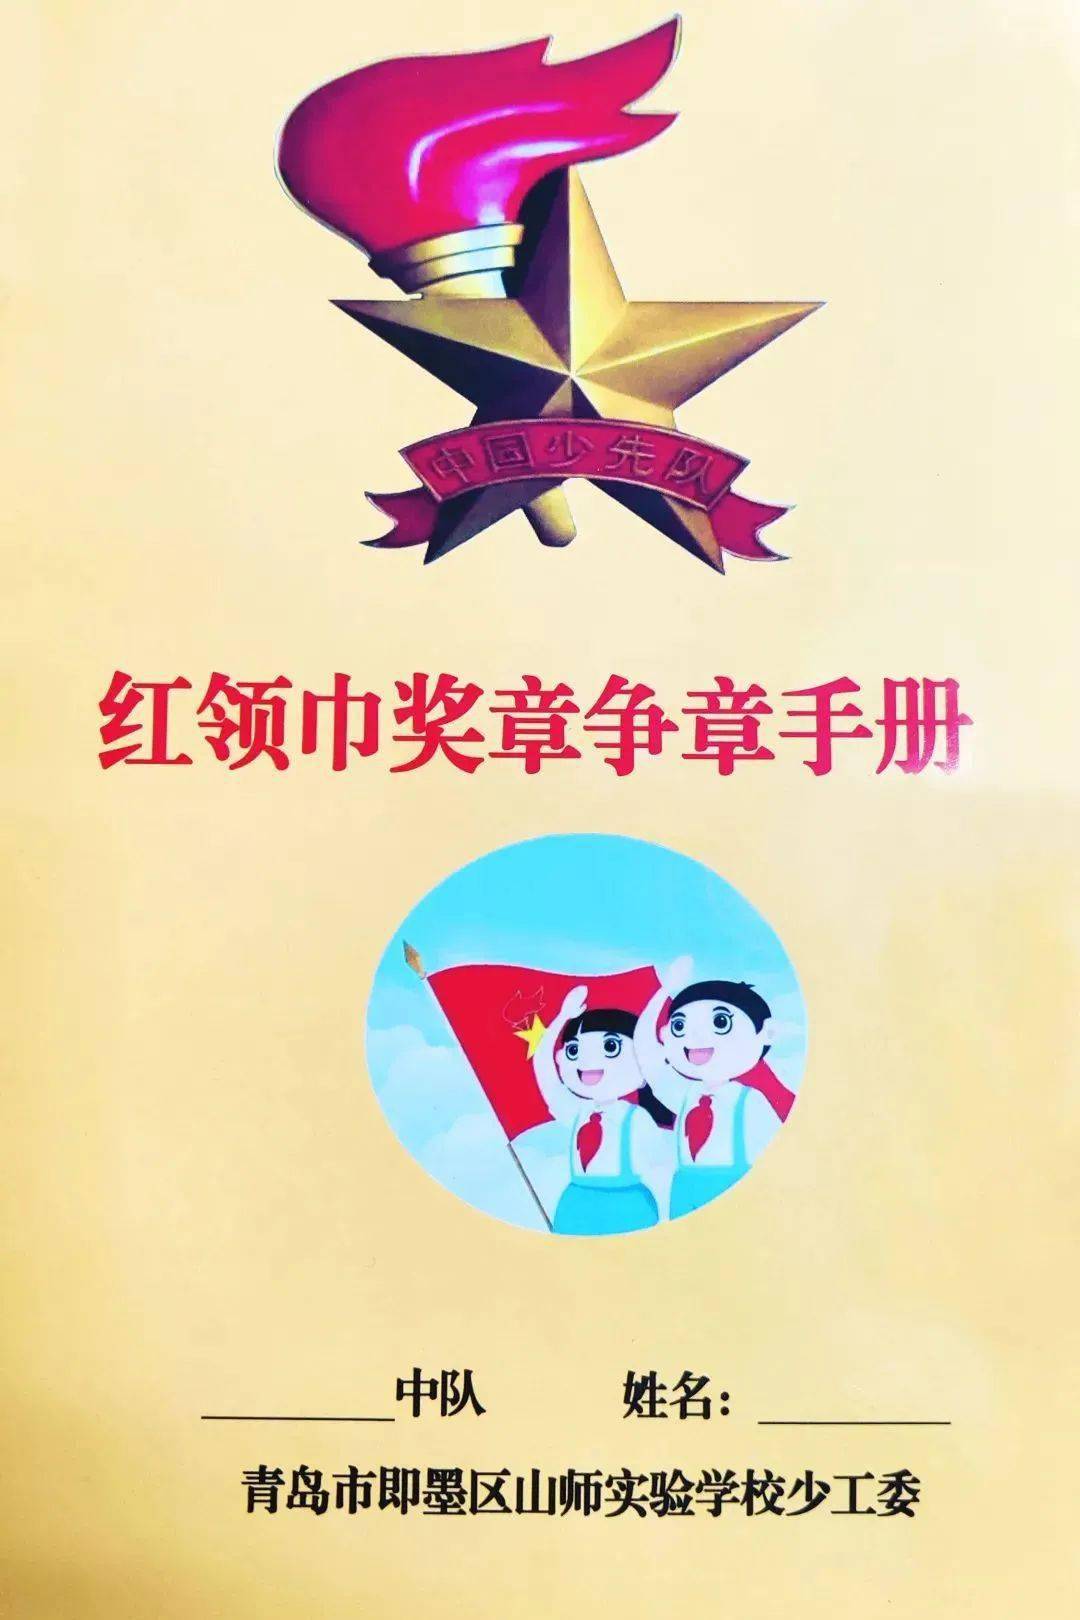 红领巾争章活动封面图片